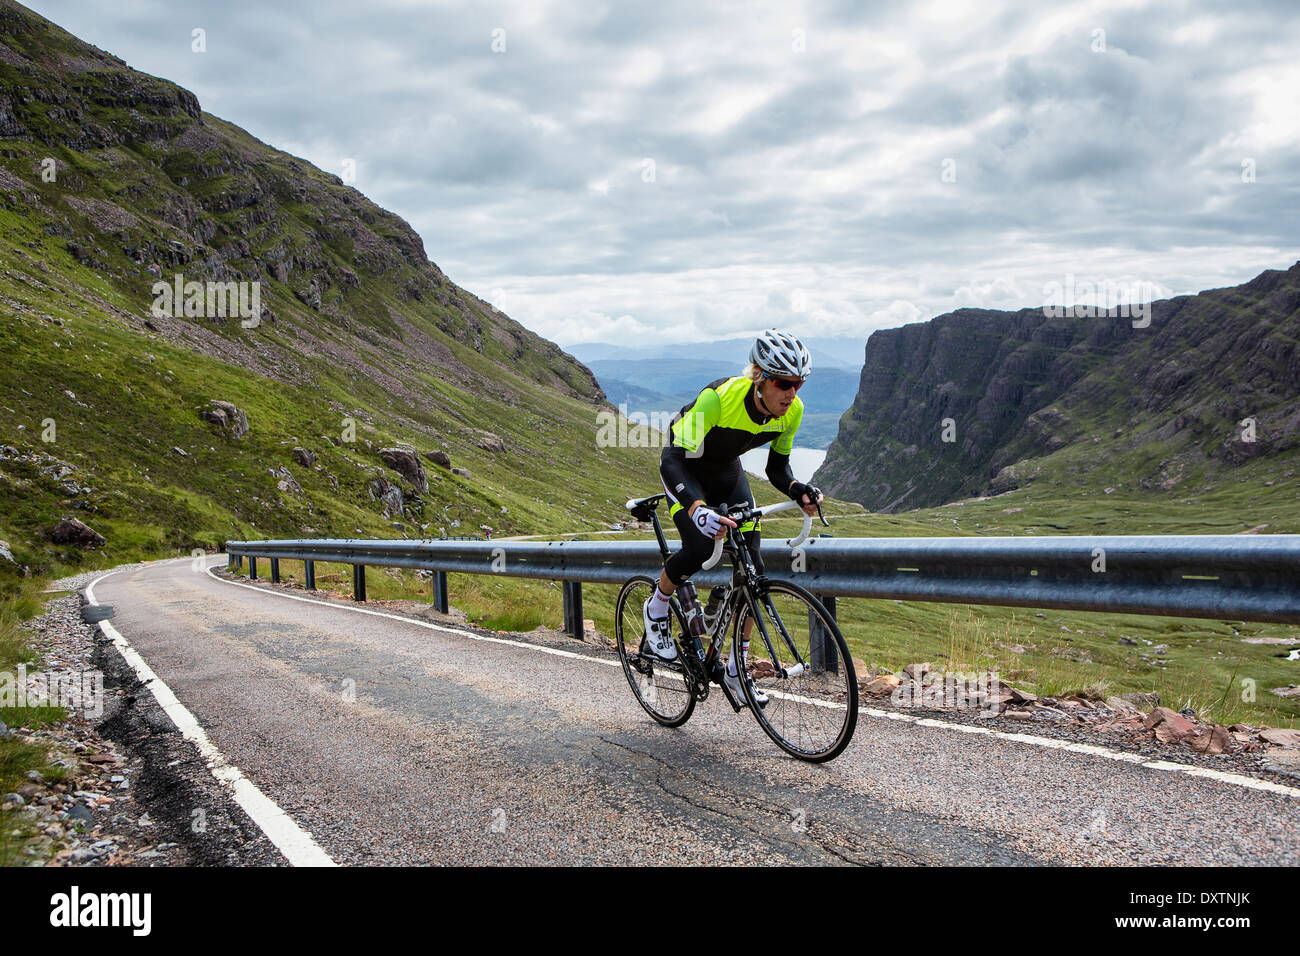 Un cycliste prend la plus longue route en montée Lochcarron, Ecosse Banque D'Images